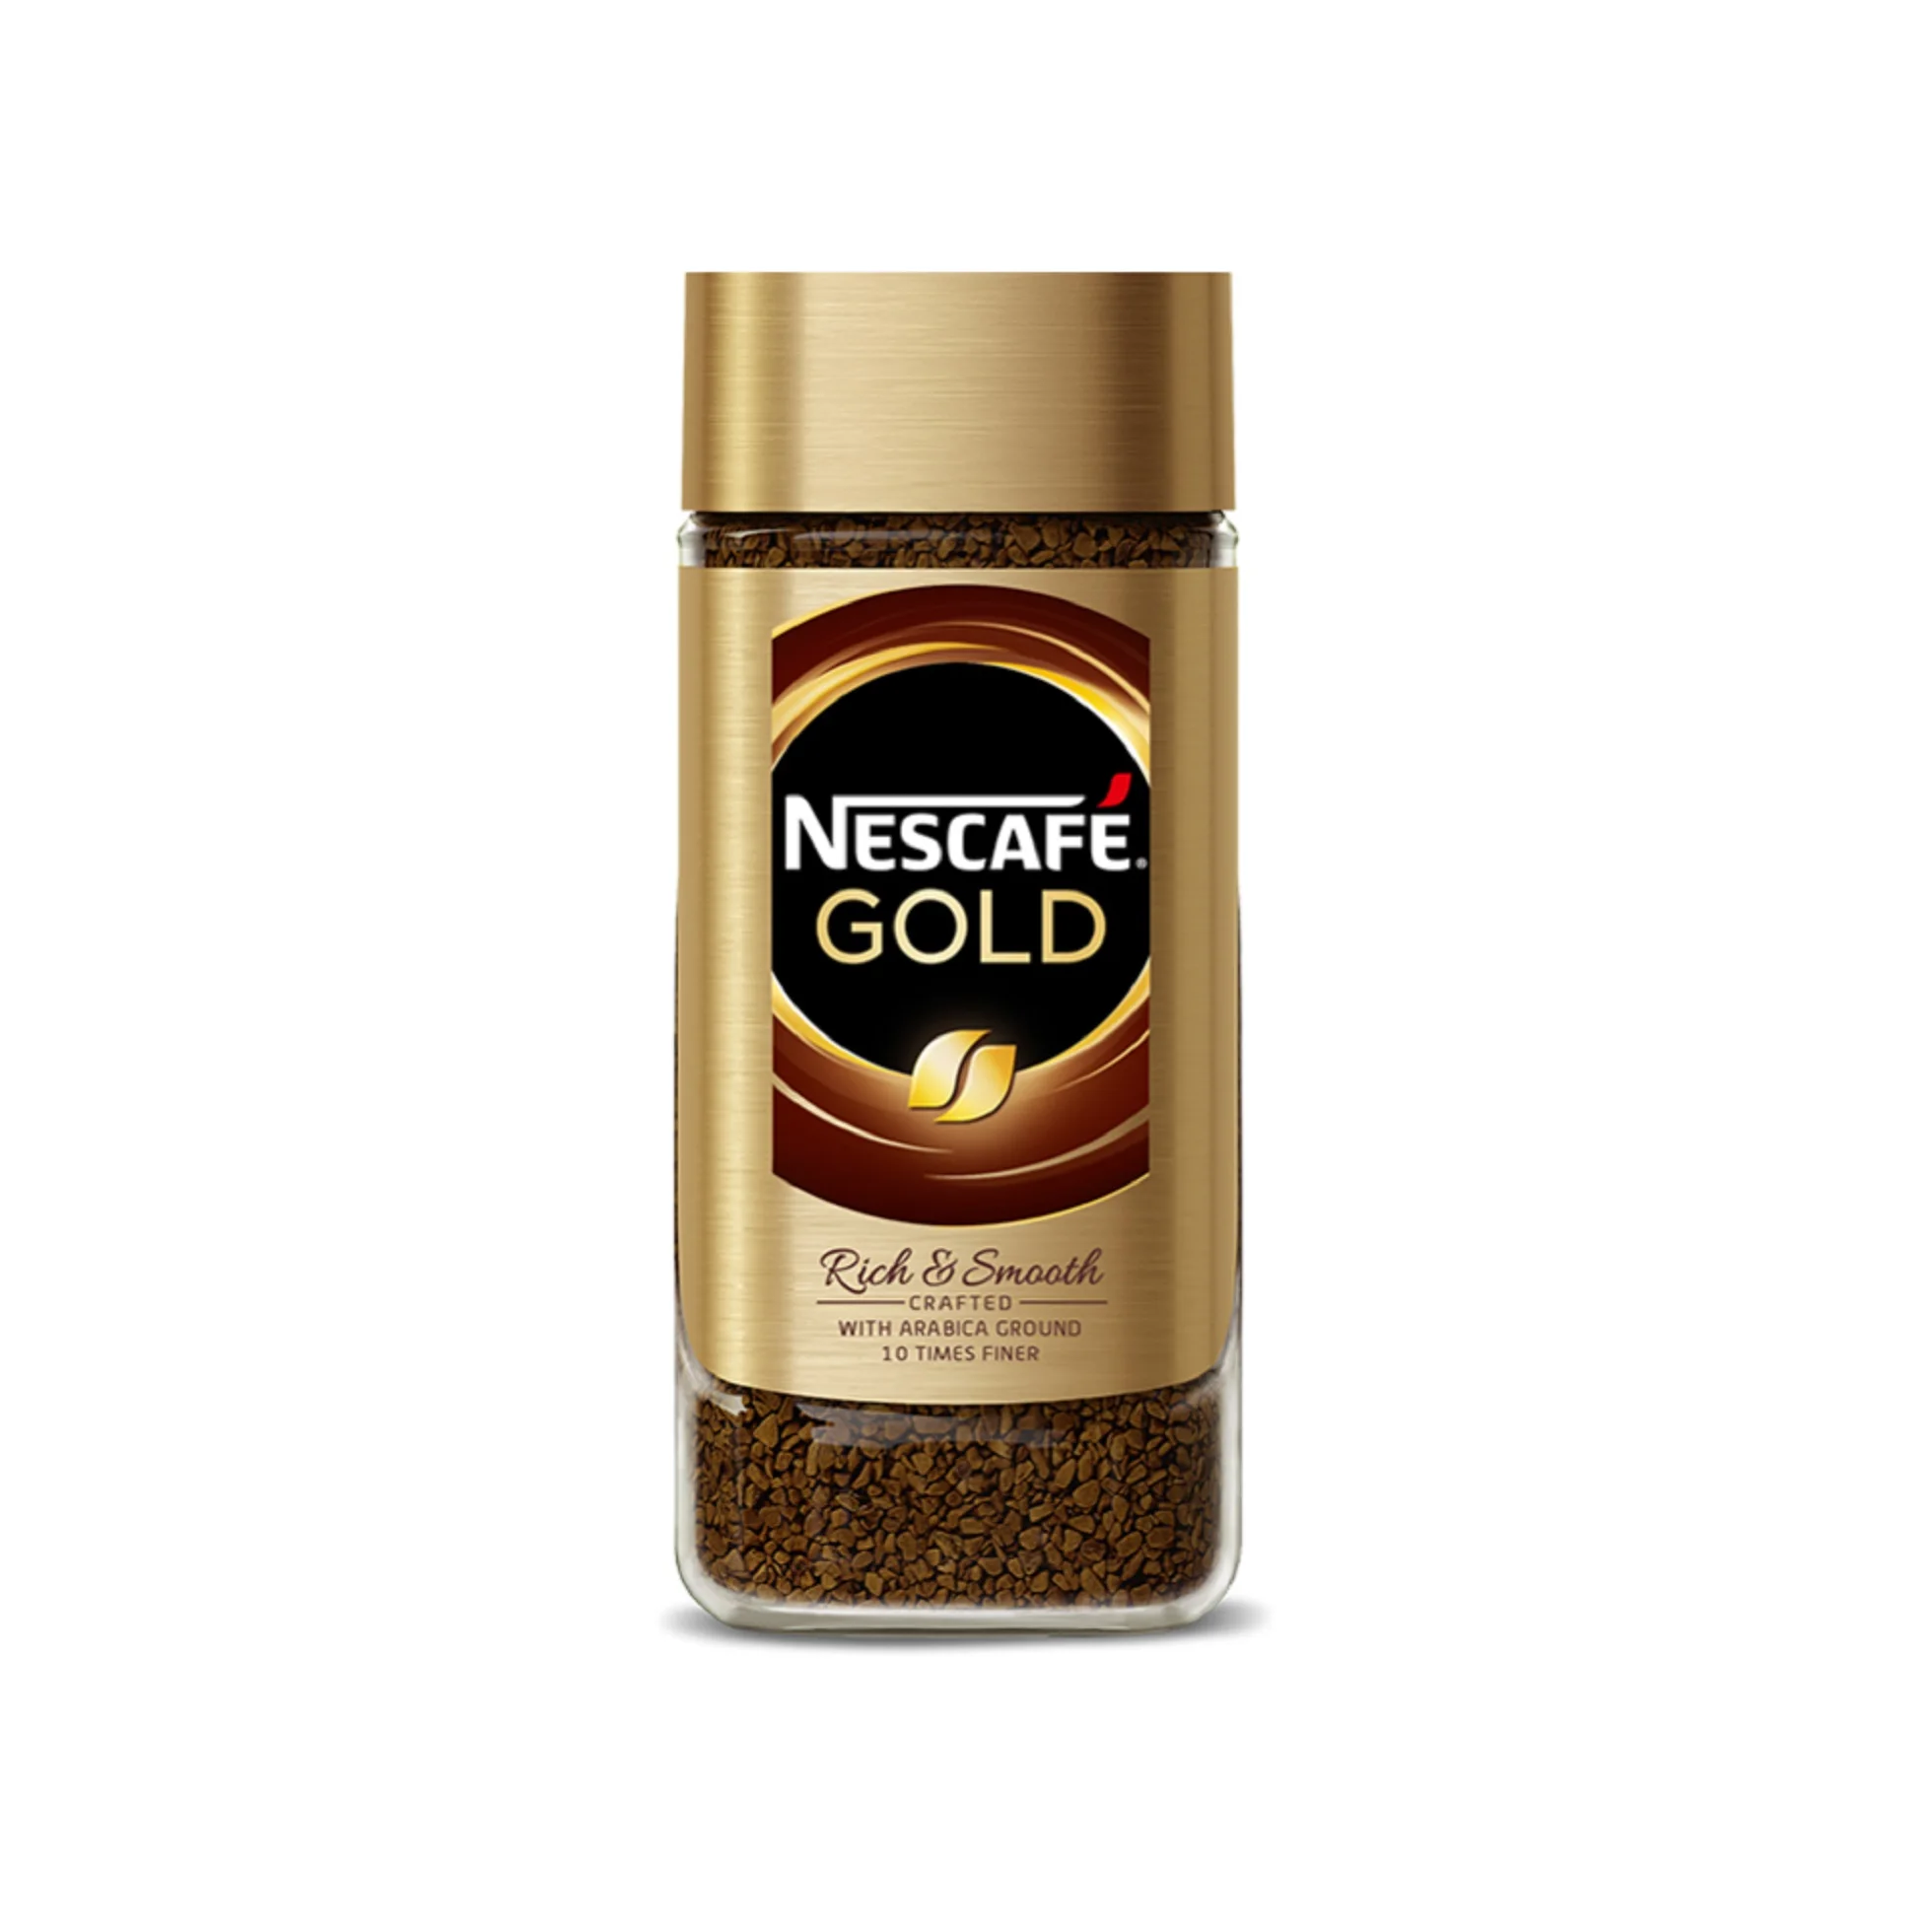 Nescafe gold 190 г. Нескафе Голд 320 г. Нескафе Голд 7. Кофе Nescafe Gold. Нескафе Голд Сигначер 95г.